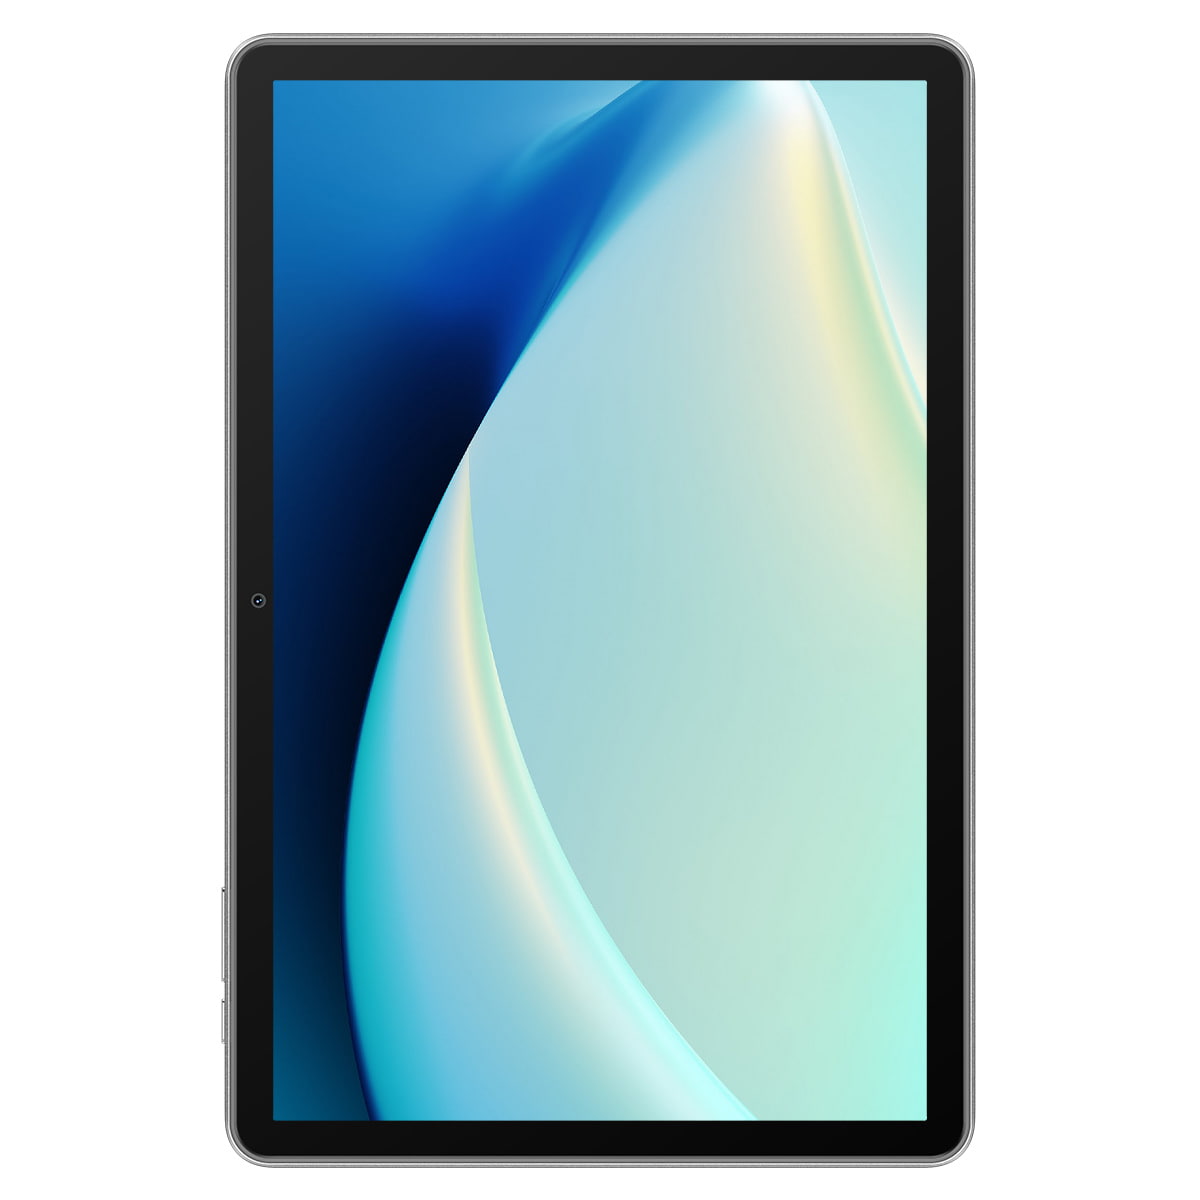 Tablette 8 pouces android 12 processeur quad core 6 go de ram